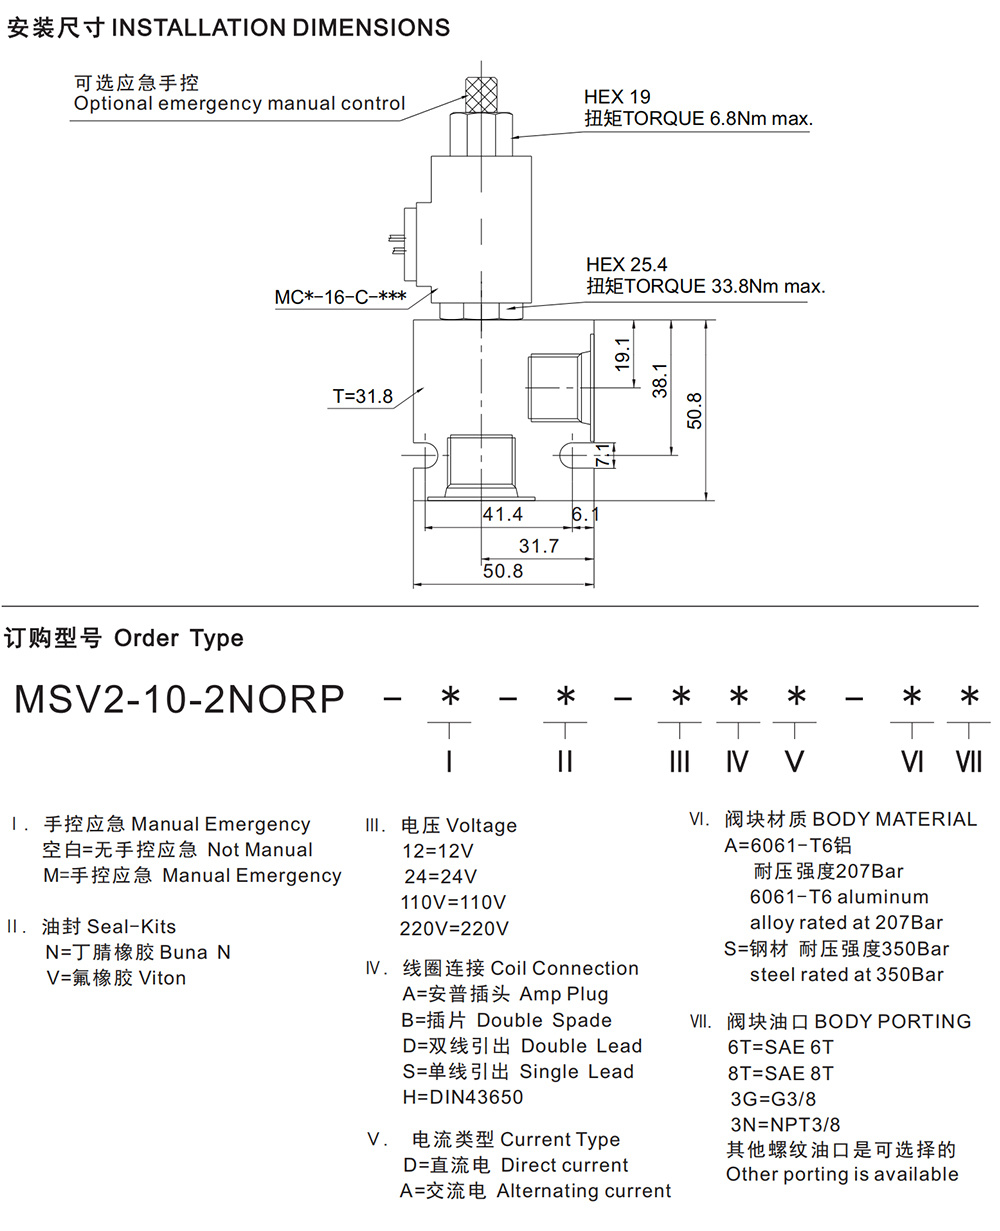 MSV2-10-2NCRP